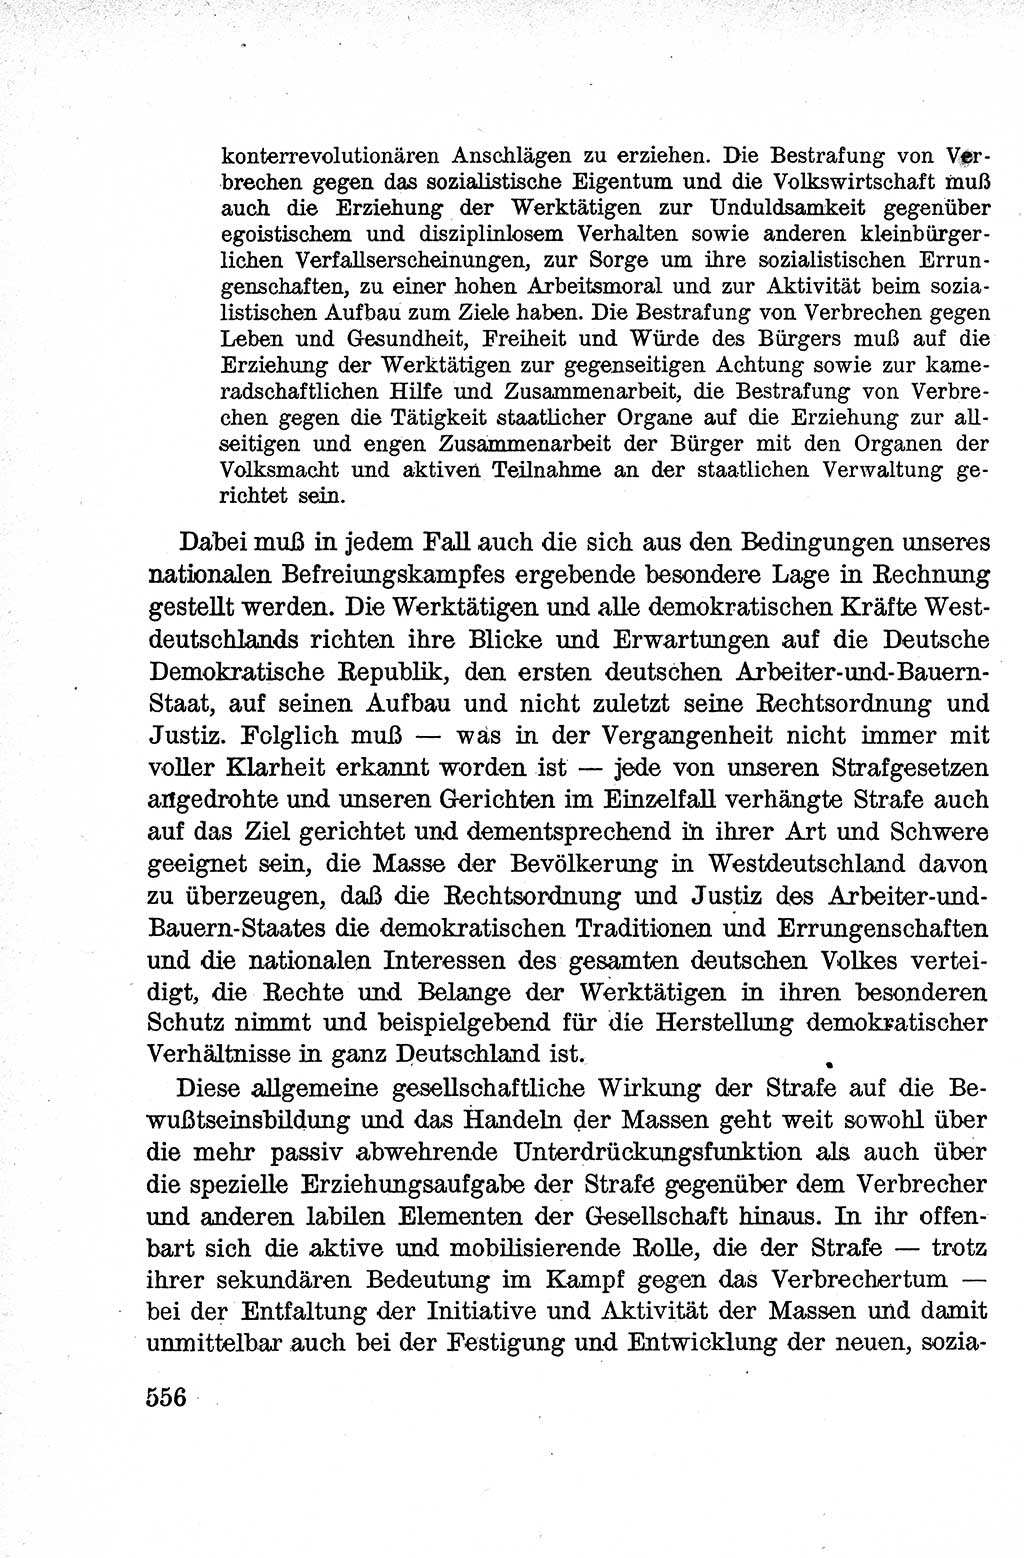 Lehrbuch des Strafrechts der Deutschen Demokratischen Republik (DDR), Allgemeiner Teil 1959, Seite 556 (Lb. Strafr. DDR AT 1959, S. 556)